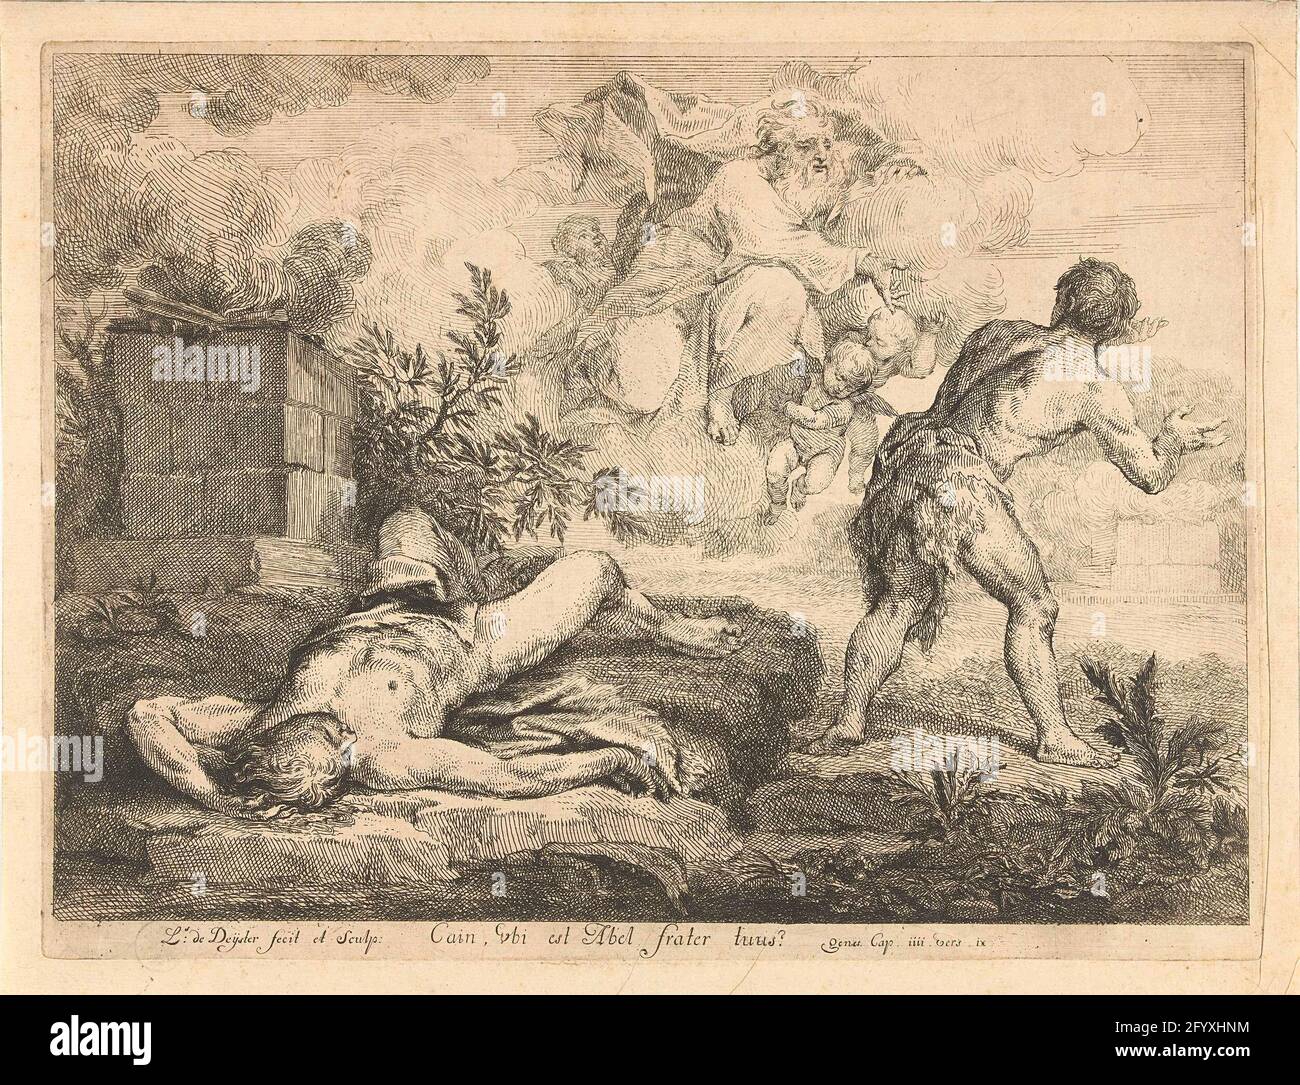 Чехов 4 гоблин каин читать полностью. Луи де бофрона. Луи Абель-Труше картины. Меркурий и Аргус. 1645-1647 Фабрициус.